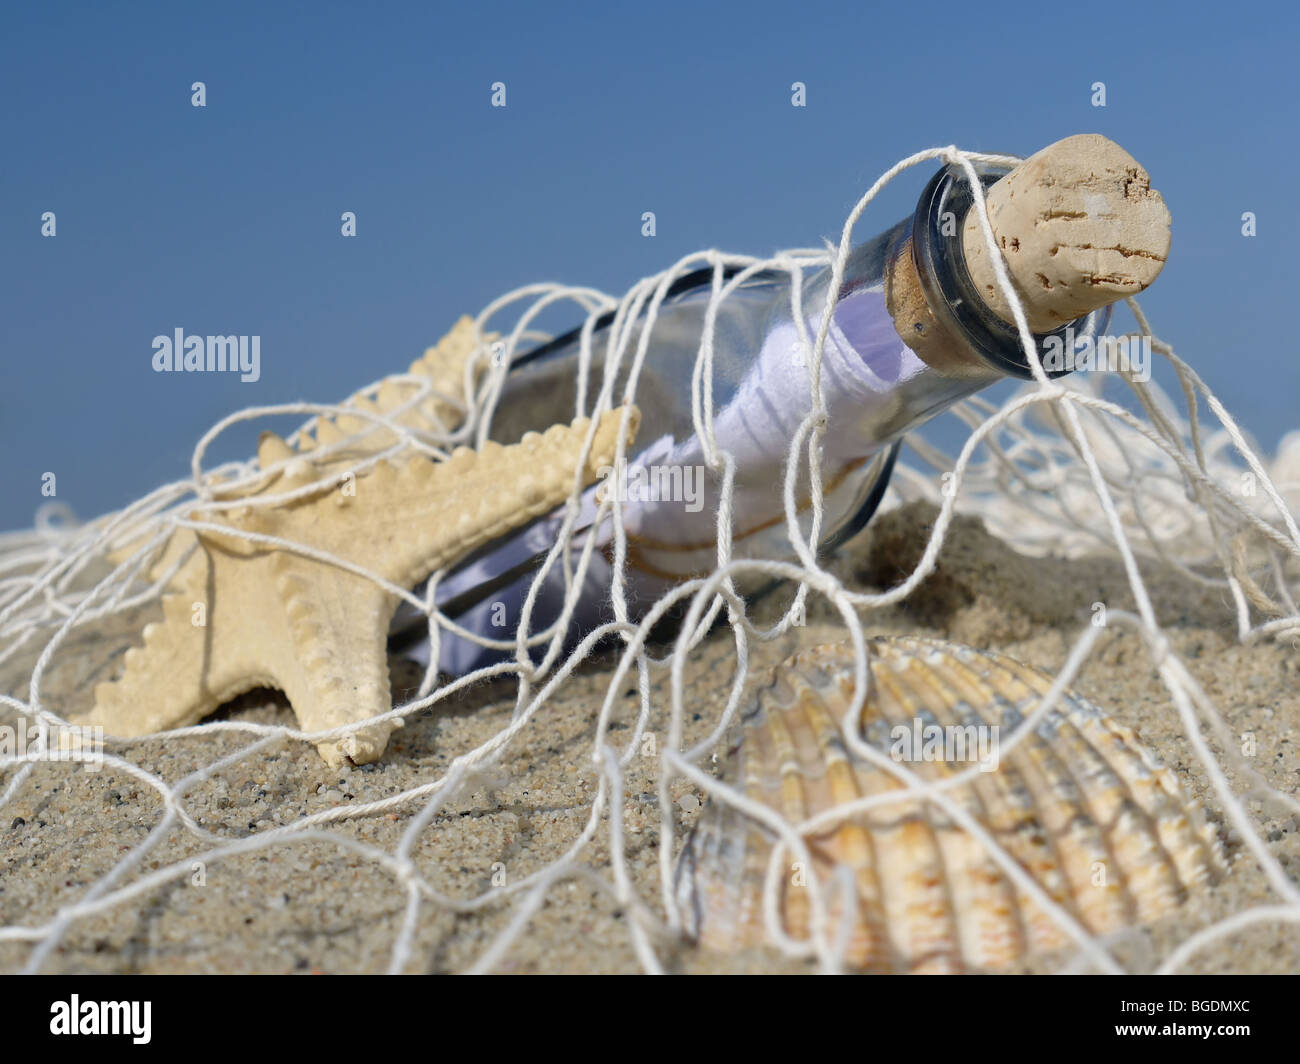 Las estrellas de mar, conchas y botella con mensaje atrapados en la red de pesca Foto de stock